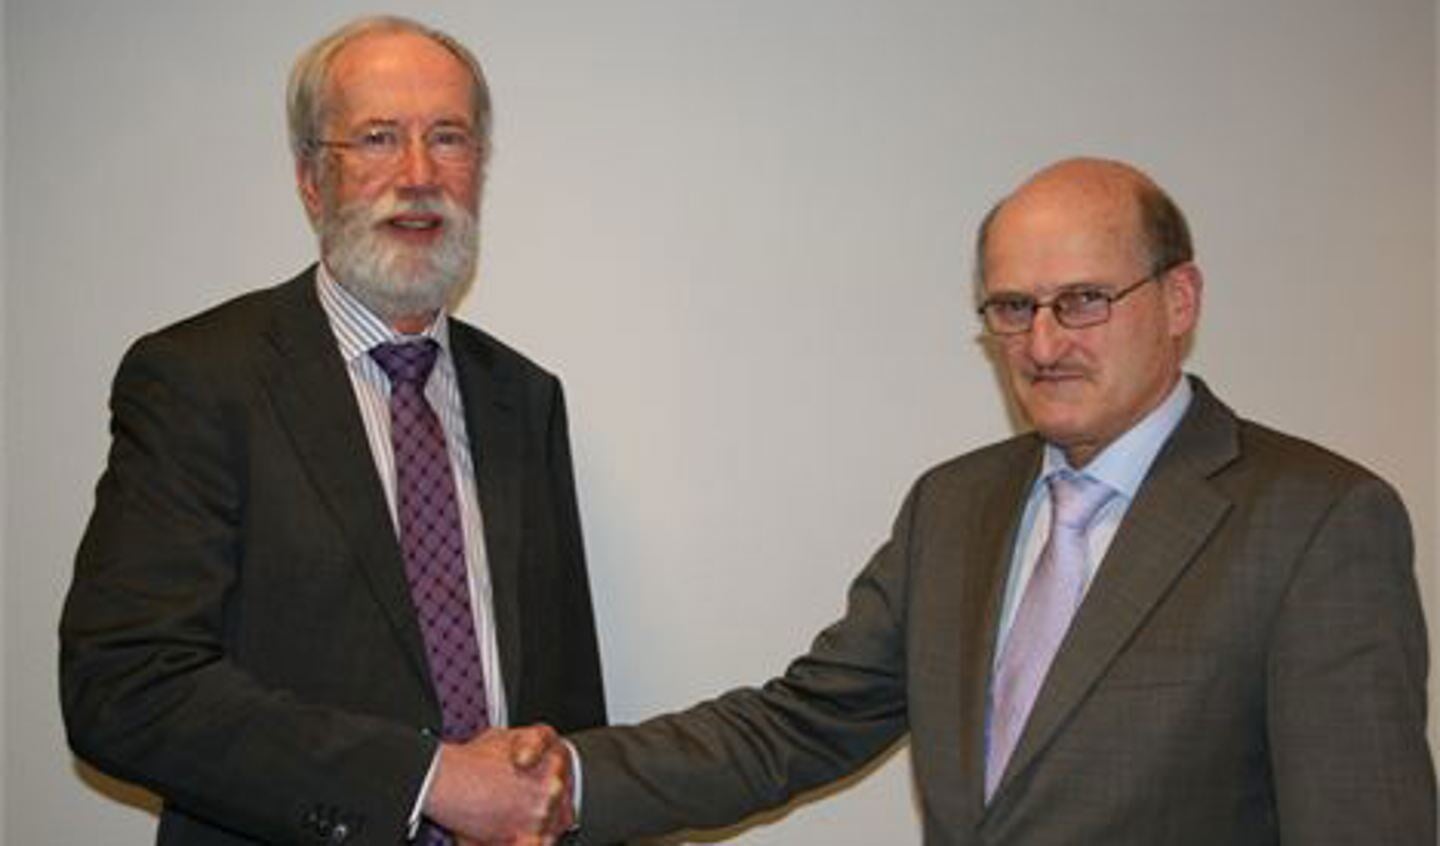 Wethouder Jaap van Staalduine en hoogheemraad Arie van den Berg schudden elkaar de hand na de ondertekening.